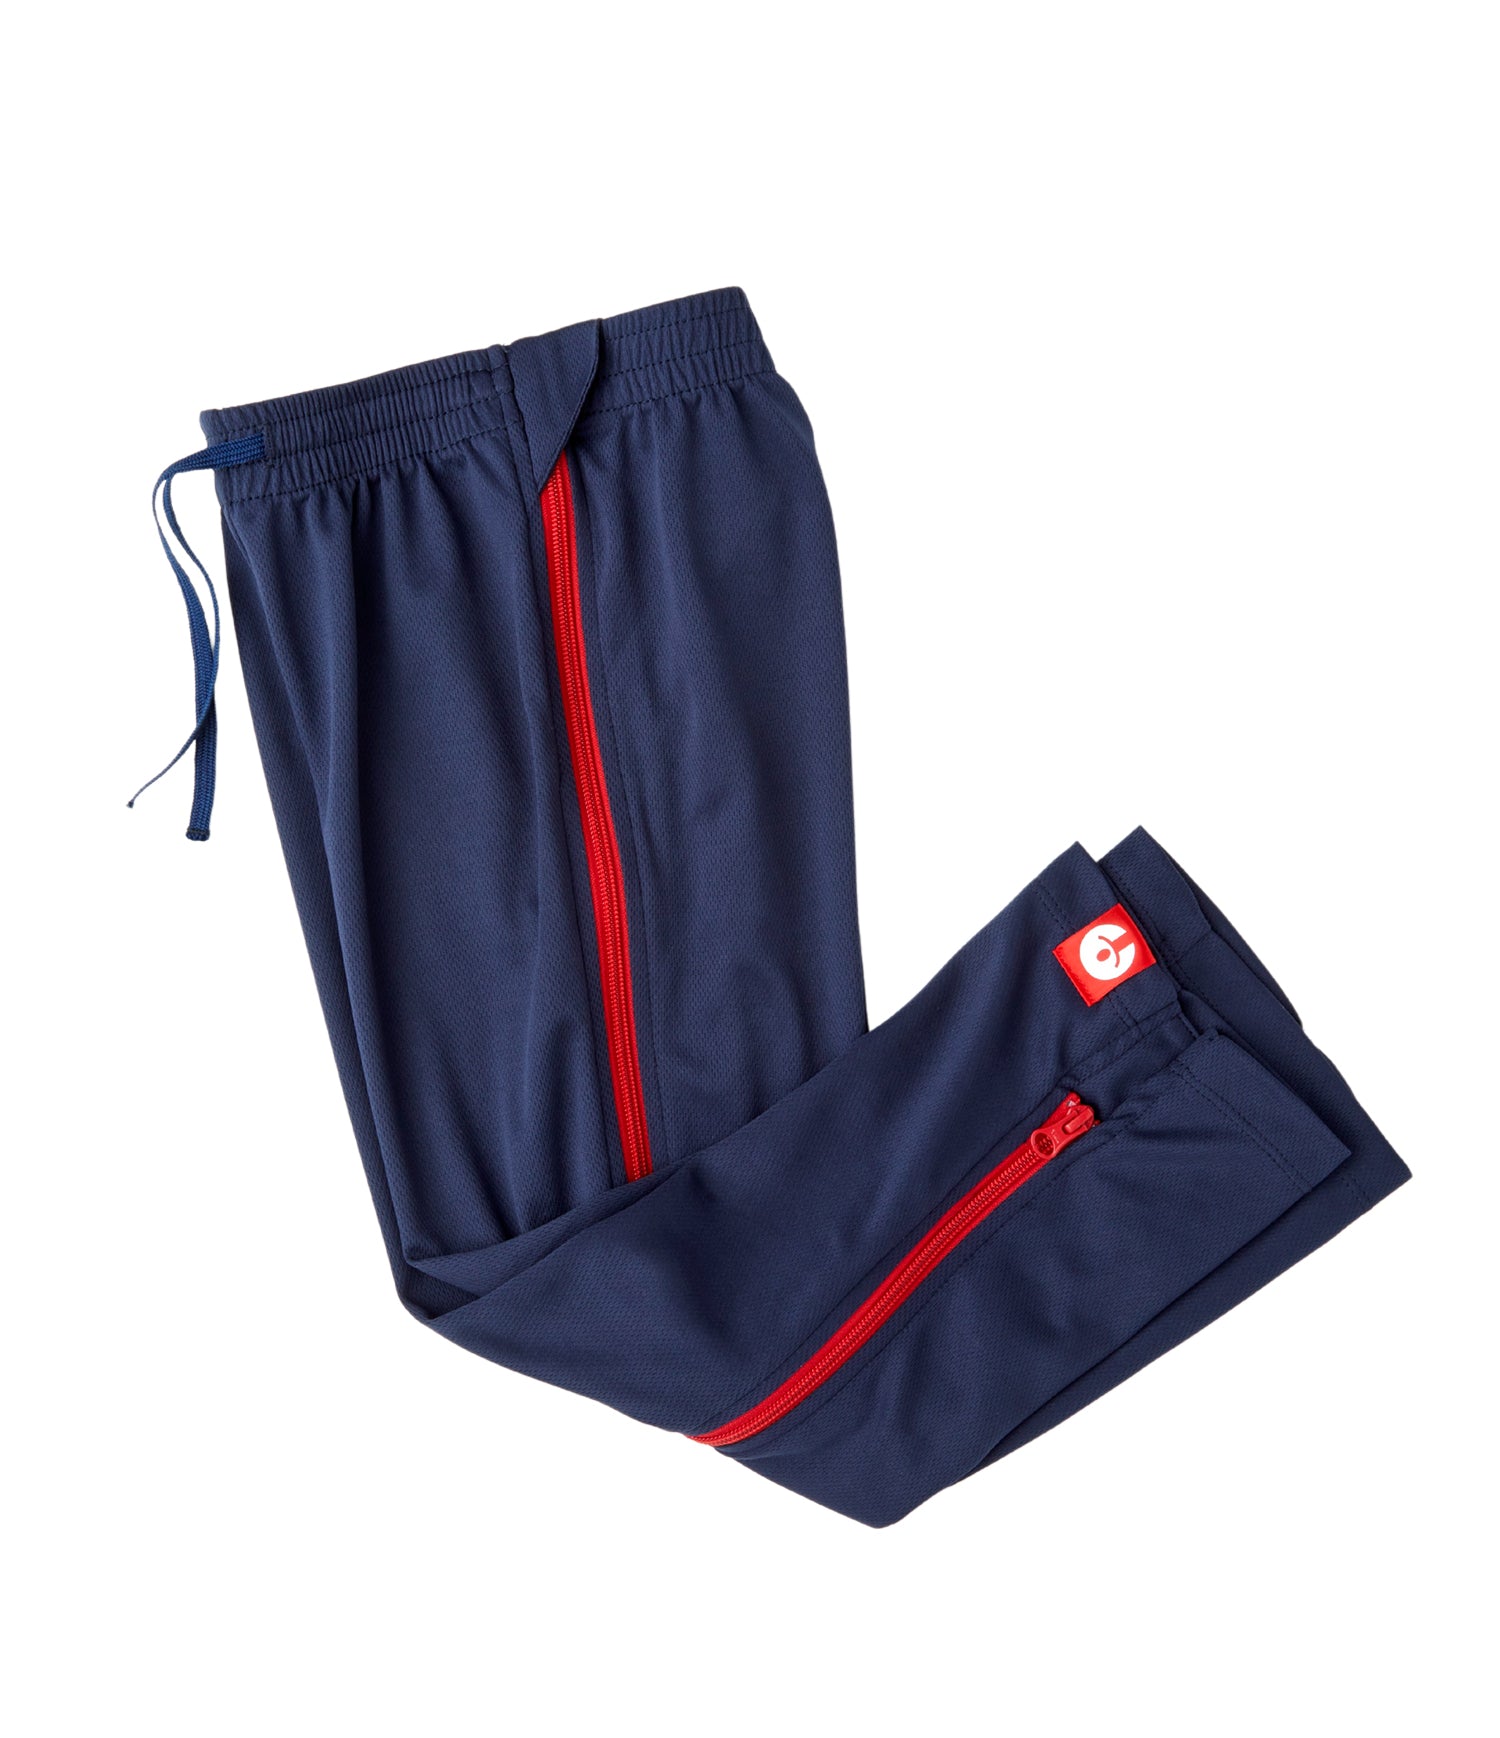 Zip Up Pants | zipOns Lightweight Pants With Zipper ...